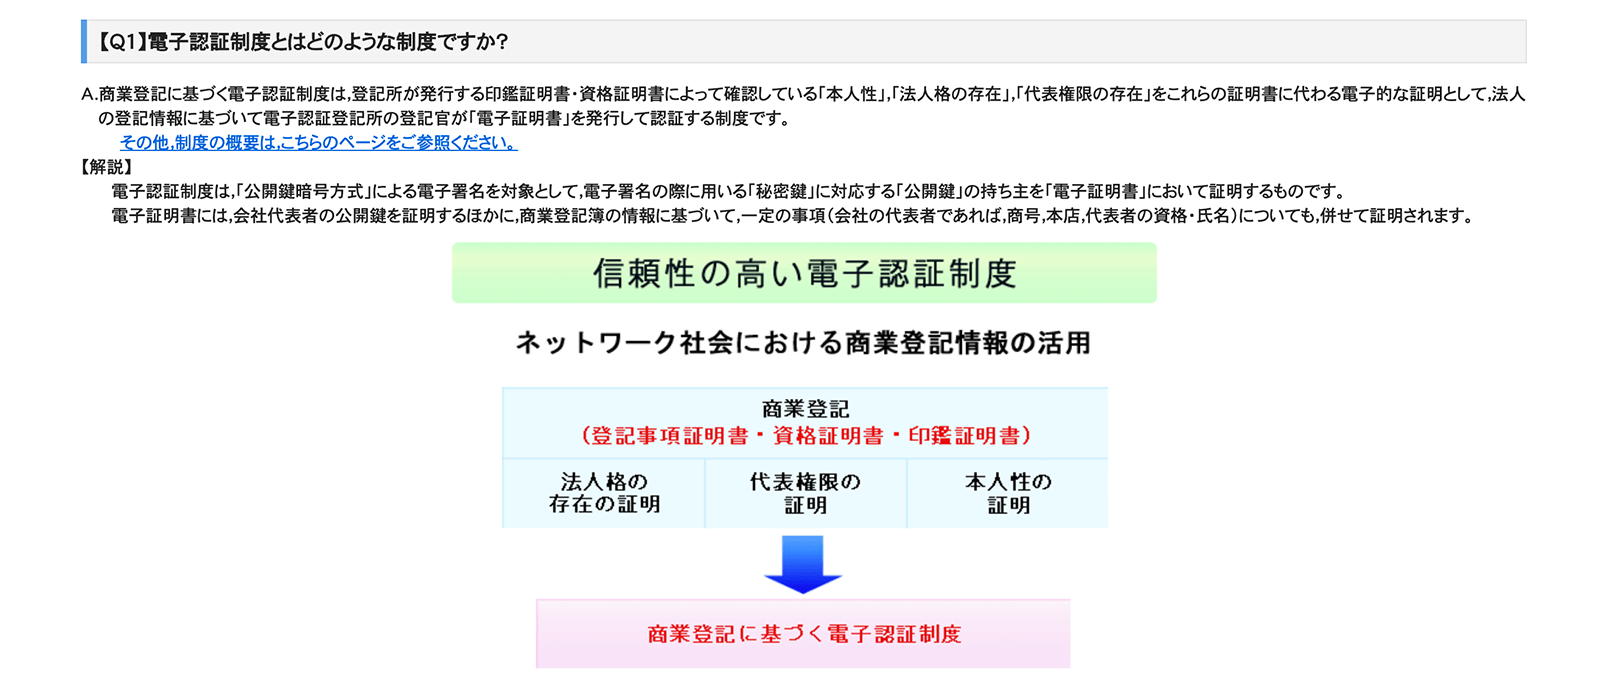 http://www.moj.go.jp/MINJI/minji06_00034.html 2020年6月1日最終アクセス